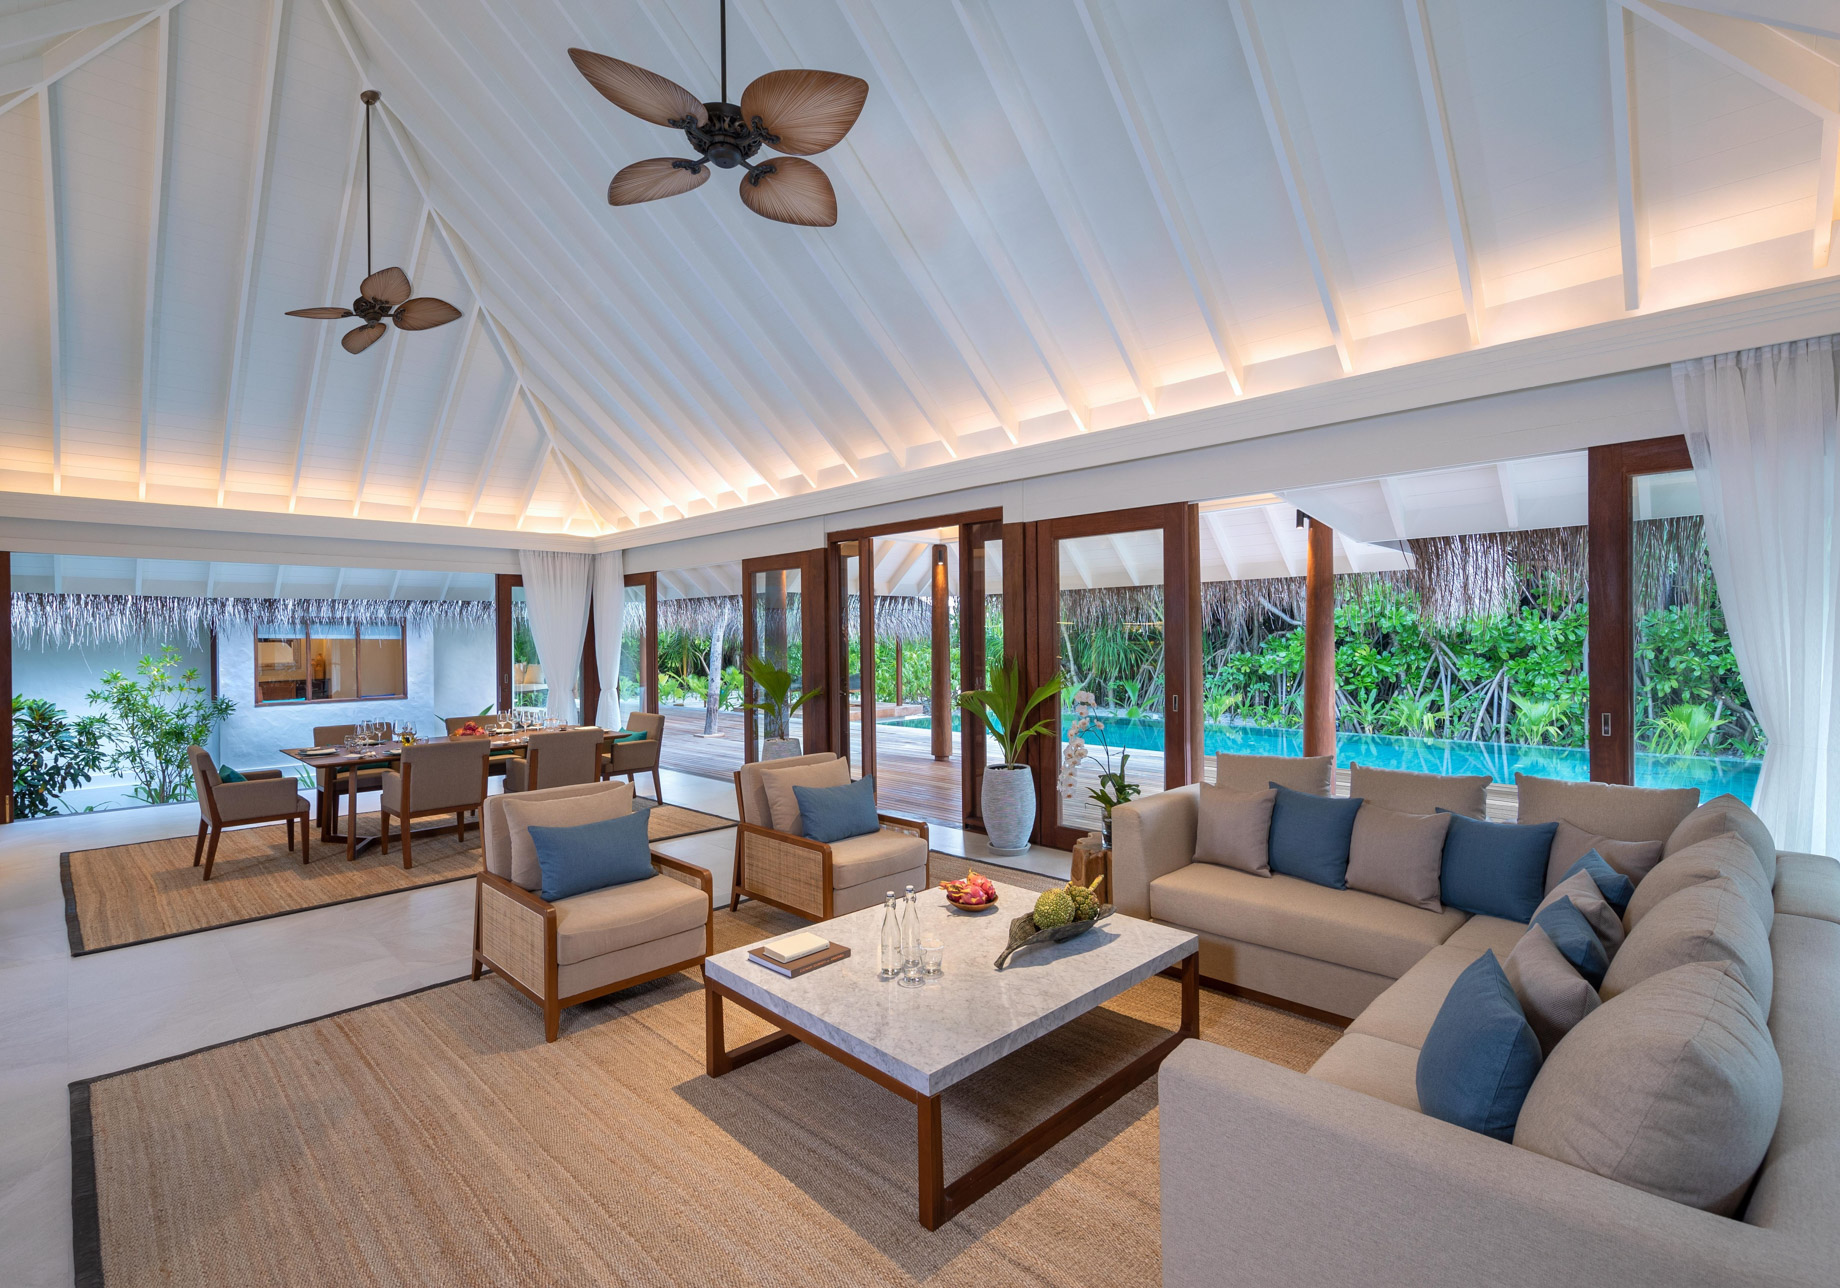 Anantara Kihavah Maldives Villas Resort – Baa Atoll, Maldives – Beach Pool Residence Living Area